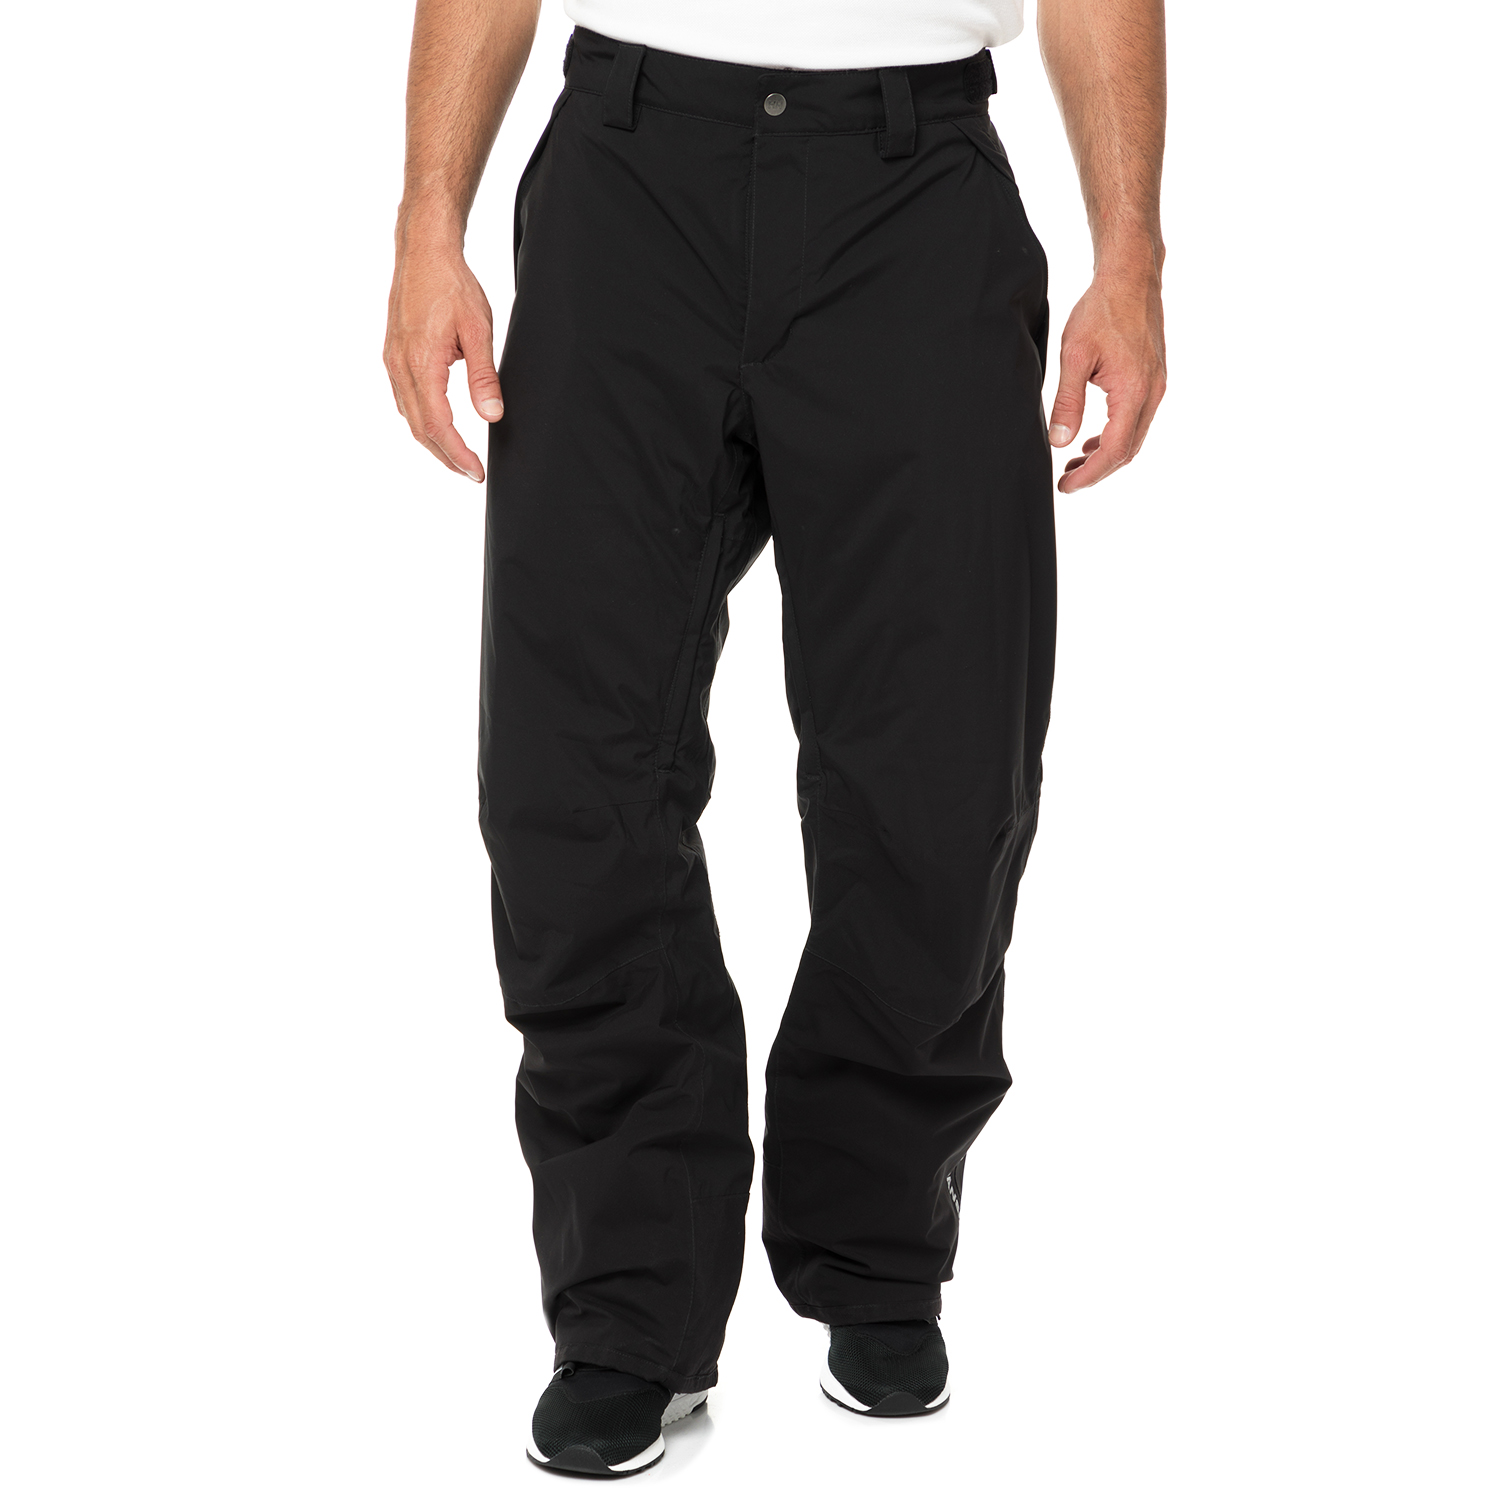 Ανδρικά/Ρούχα/Αθλητικά/Φόρμες HELLY HANSEN - Ανδρικό παντελόνι σκι HELLY HANSEN VELOCITY INSULATED μαύρο